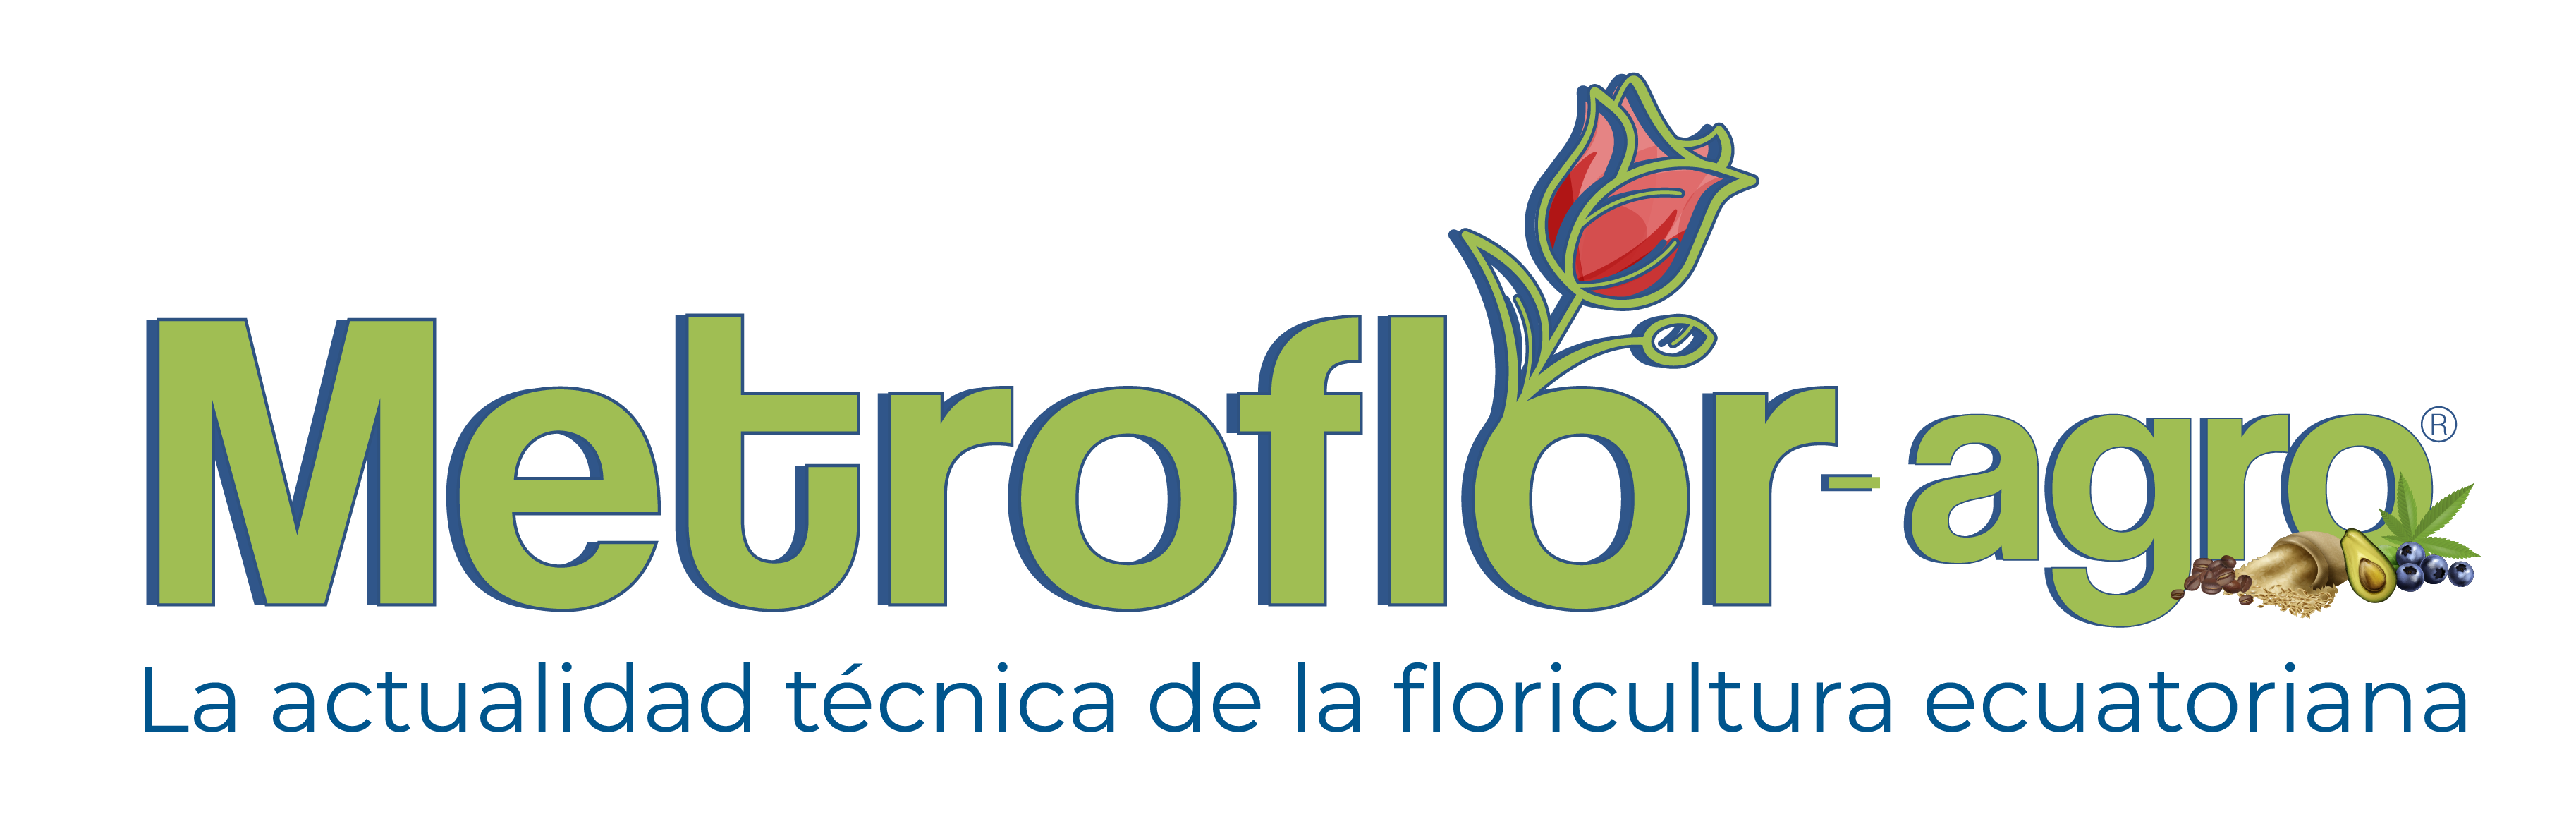 Metroflor-agro Ecuador